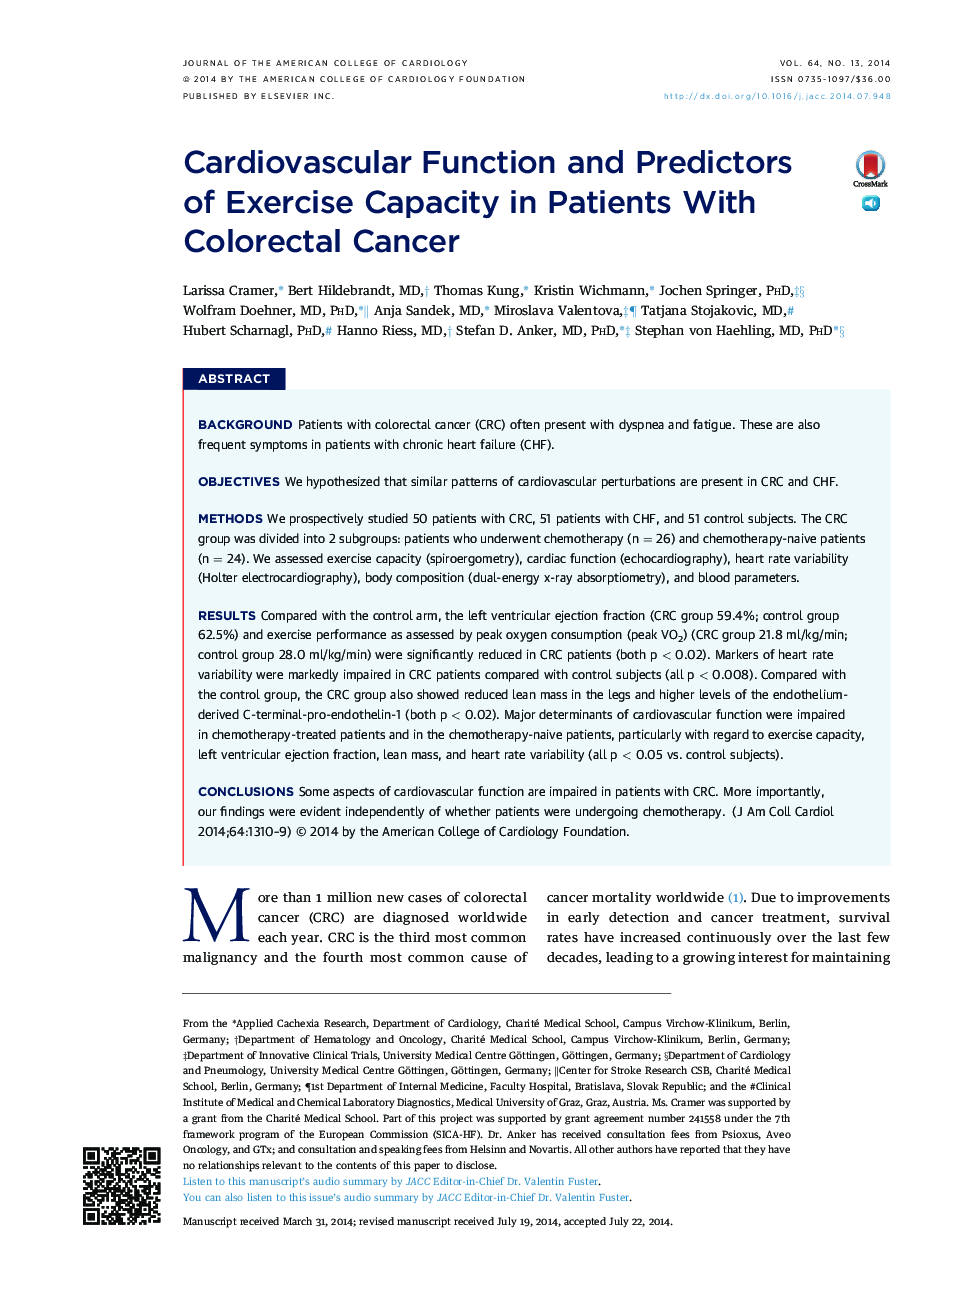 عملکرد قلبی عروقی و پیش بینی کننده توانمندی ورزش در بیماران مبتلا به سرطان کولورکتال 